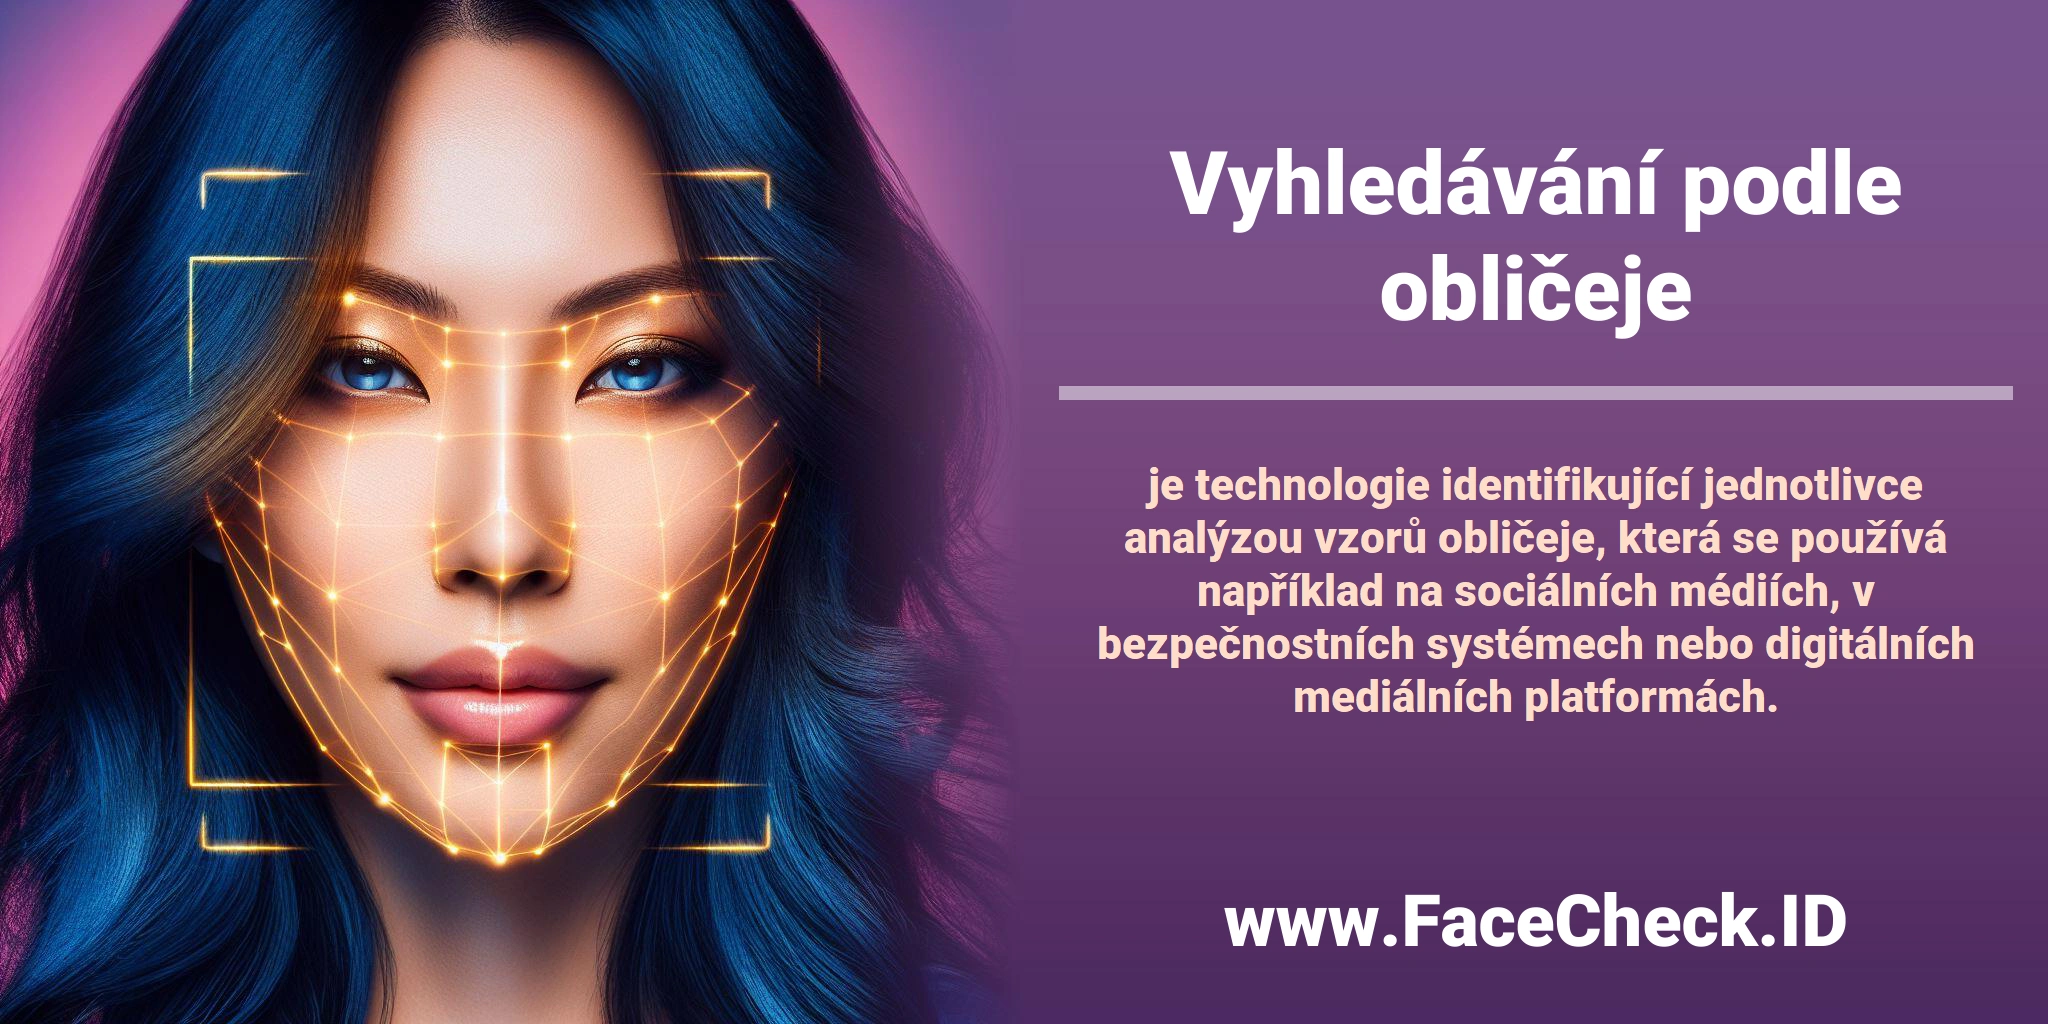 <b>Vyhledávání podle obličeje</b> je technologie identifikující jednotlivce analýzou vzorů obličeje, která se používá například na sociálních médiích, v bezpečnostních systémech nebo digitálních mediálních platformách.
